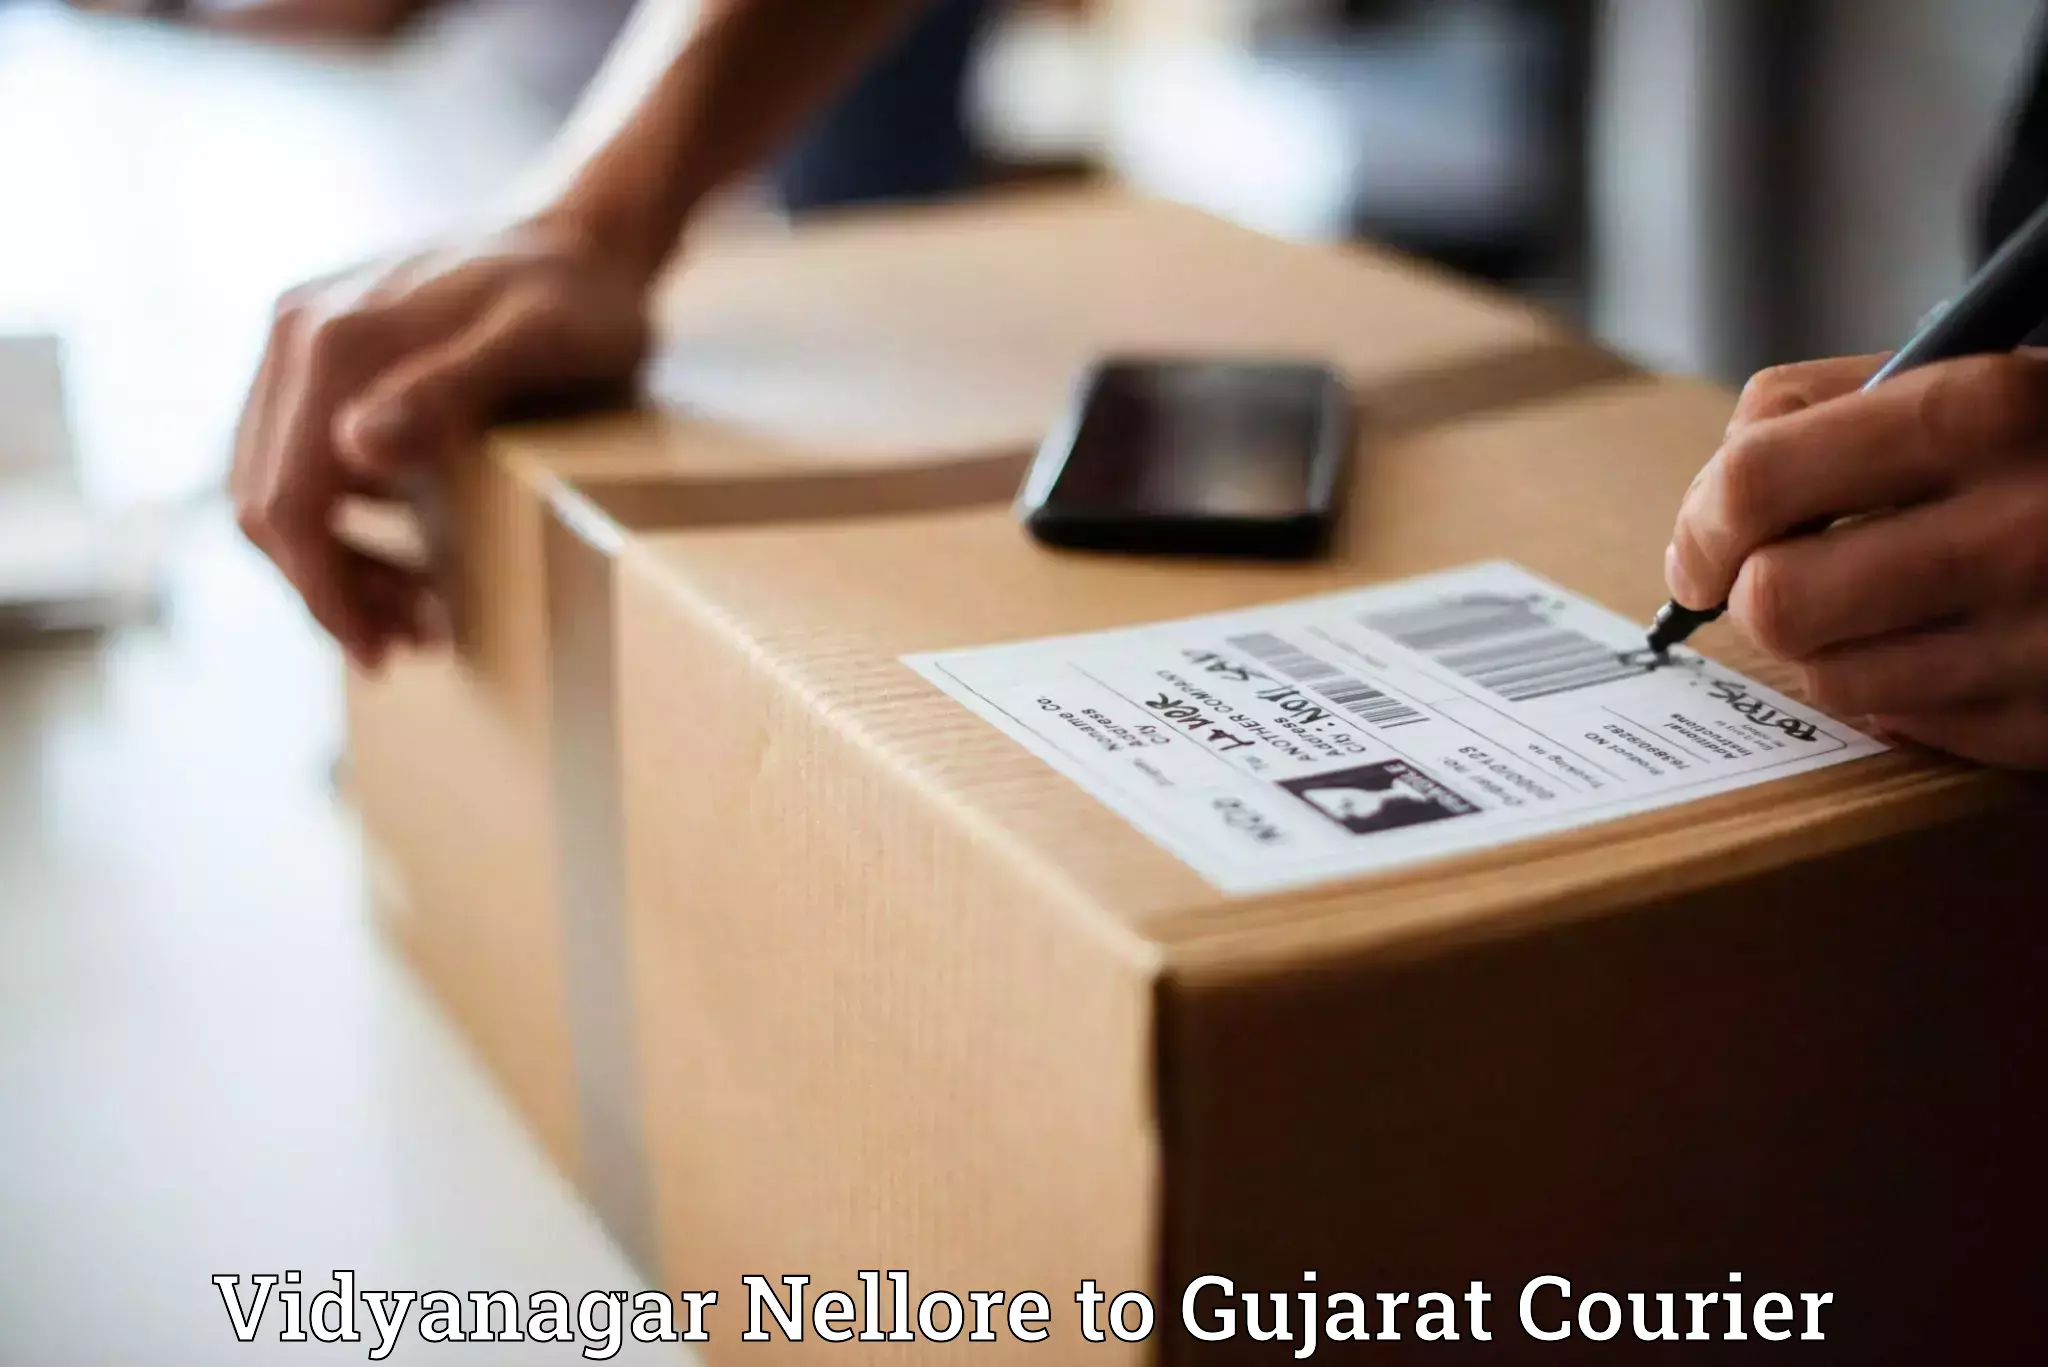 Courier service comparison in Vidyanagar Nellore to Surat